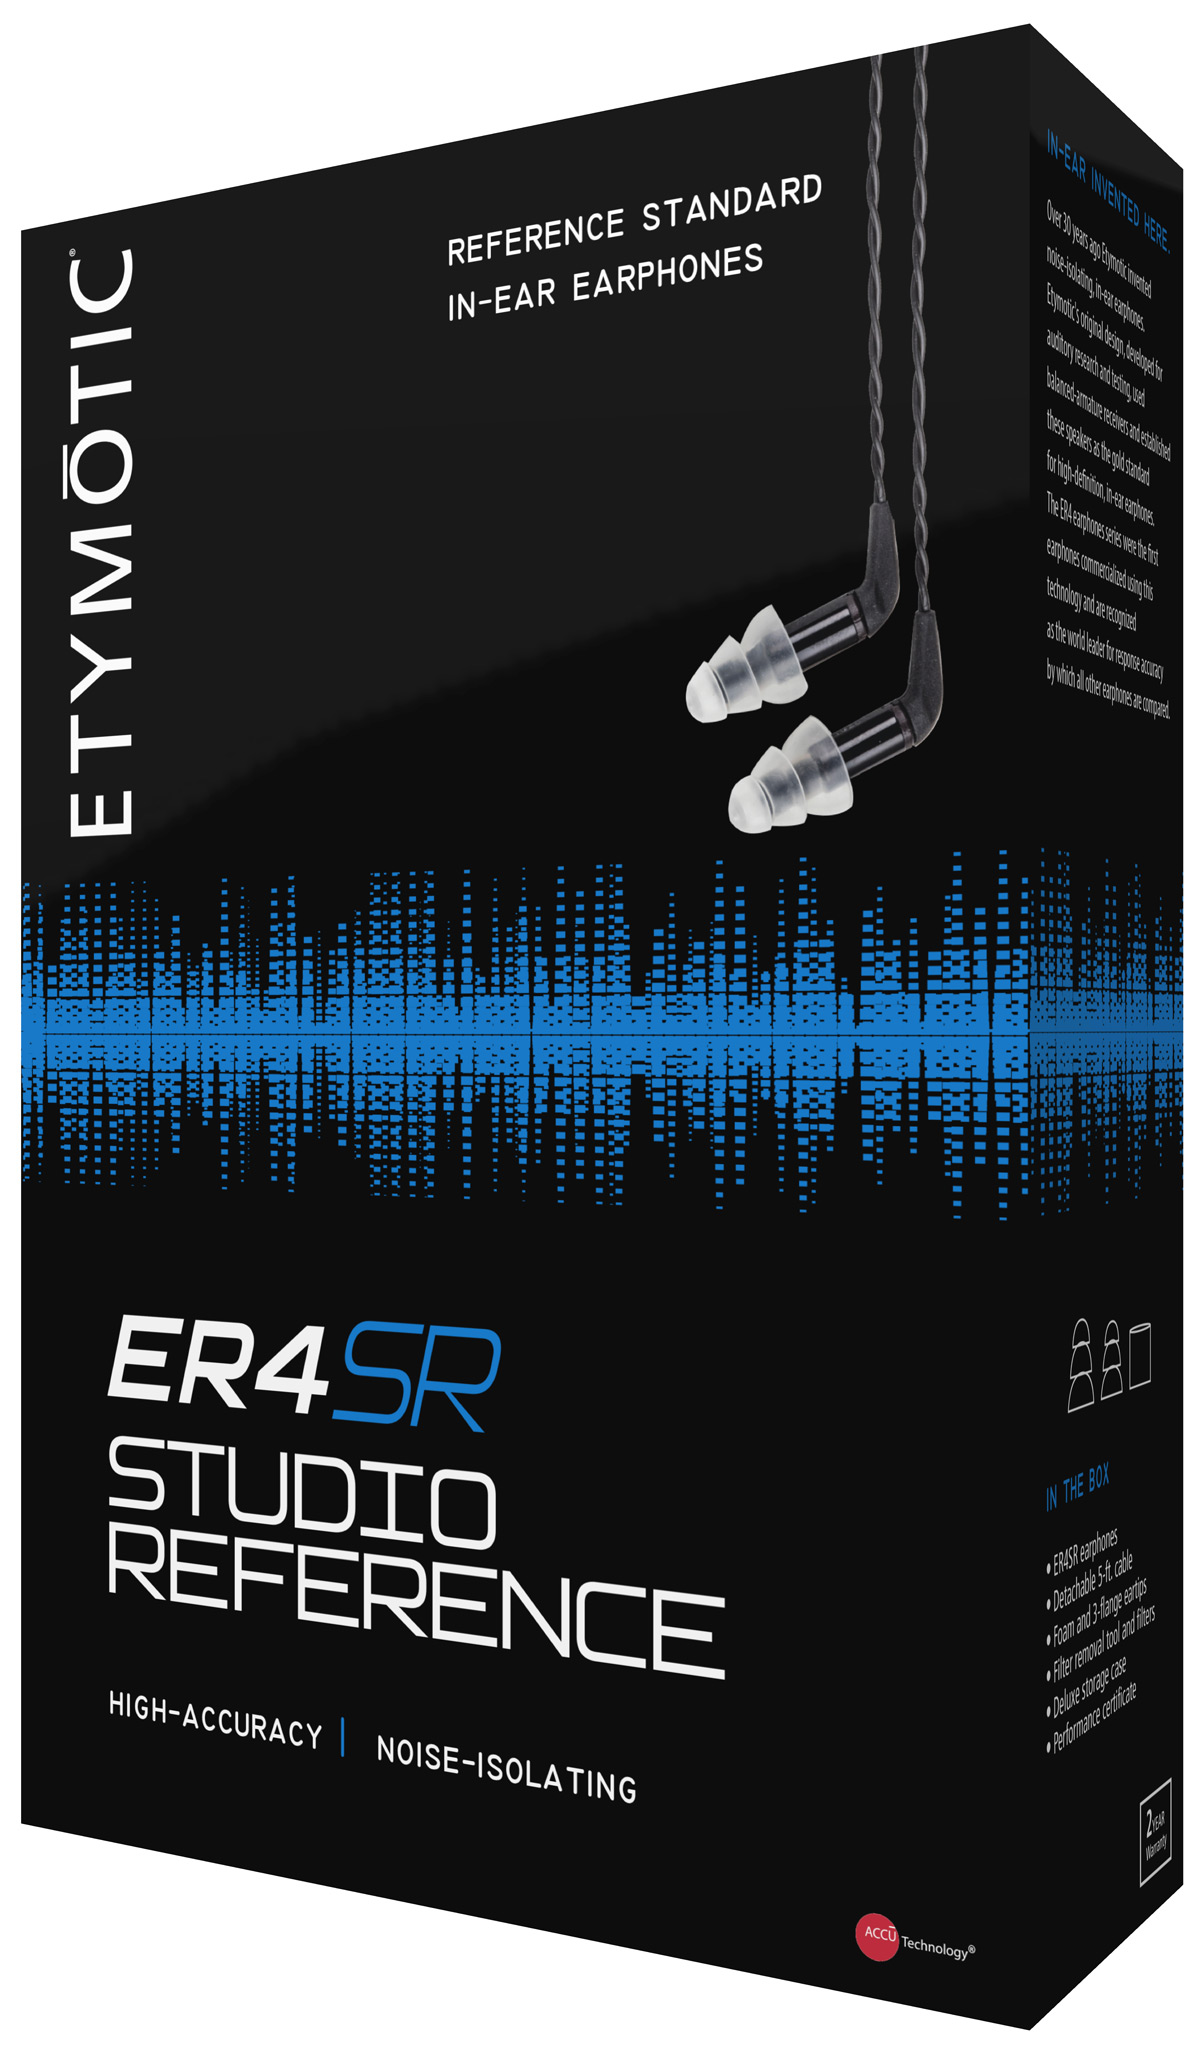 Etymotic ER4SR earphones